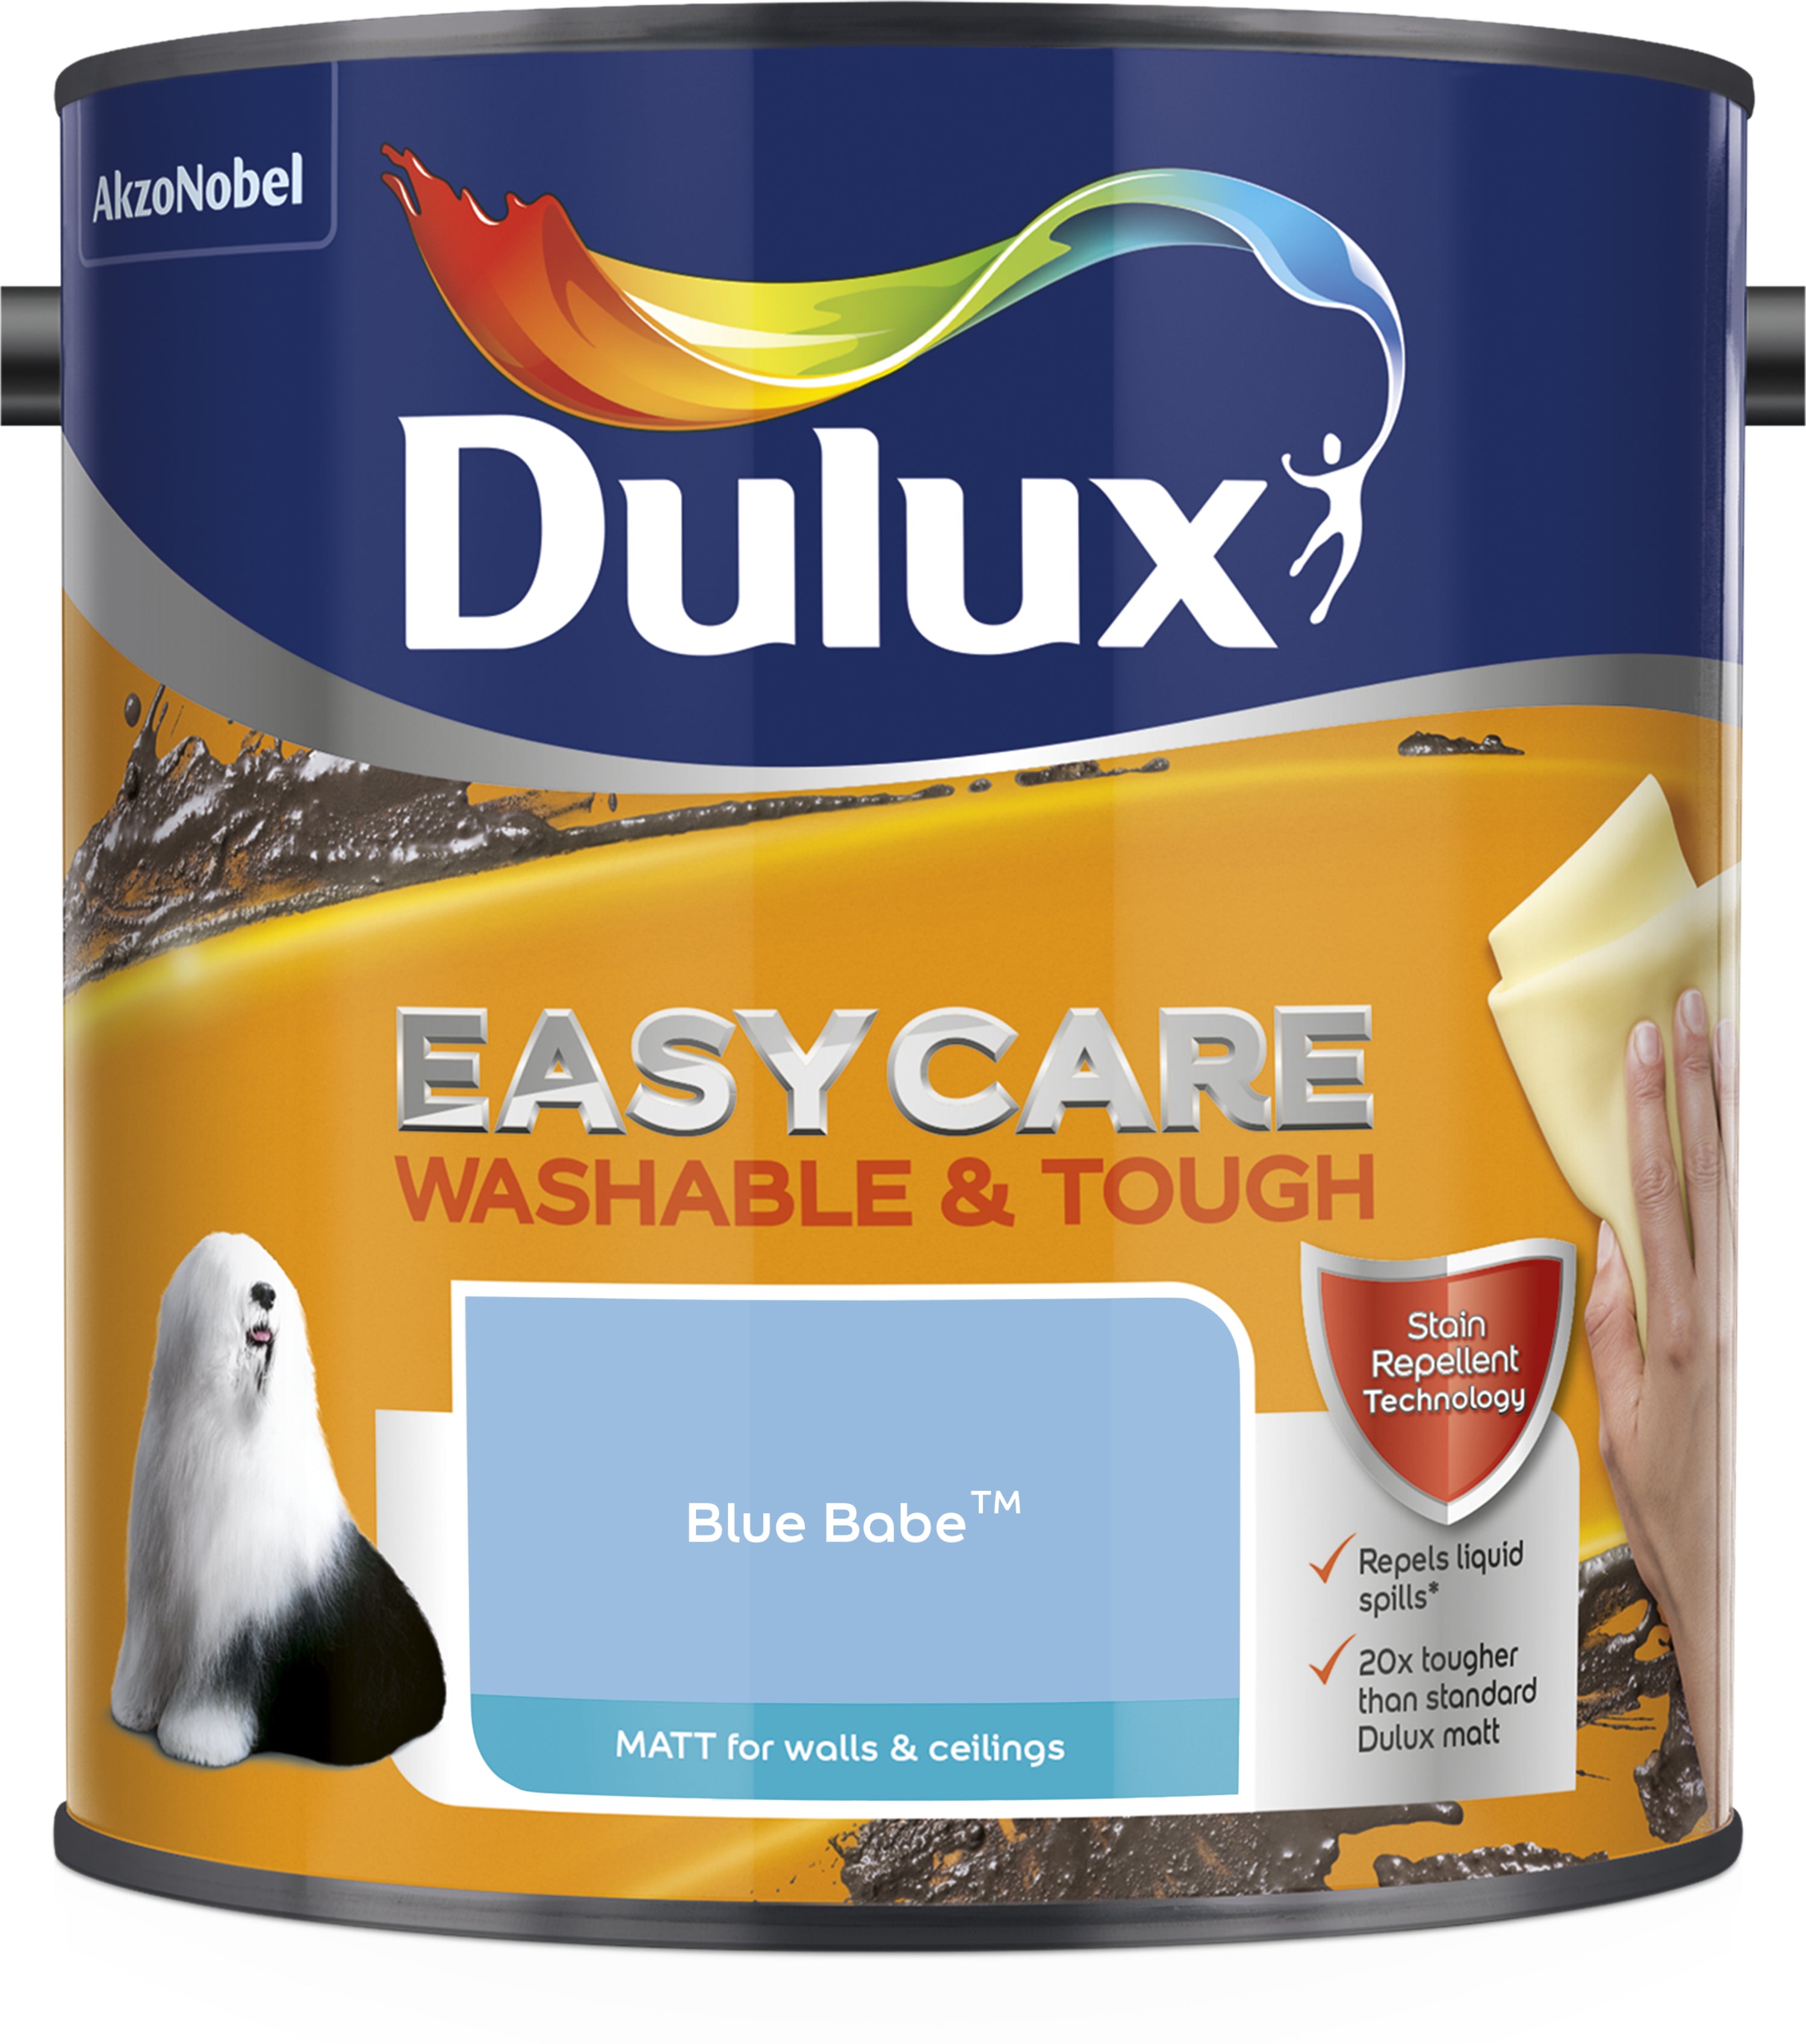 Dulux Easycare Washable & Tough Matt Blue Babe 2.5L